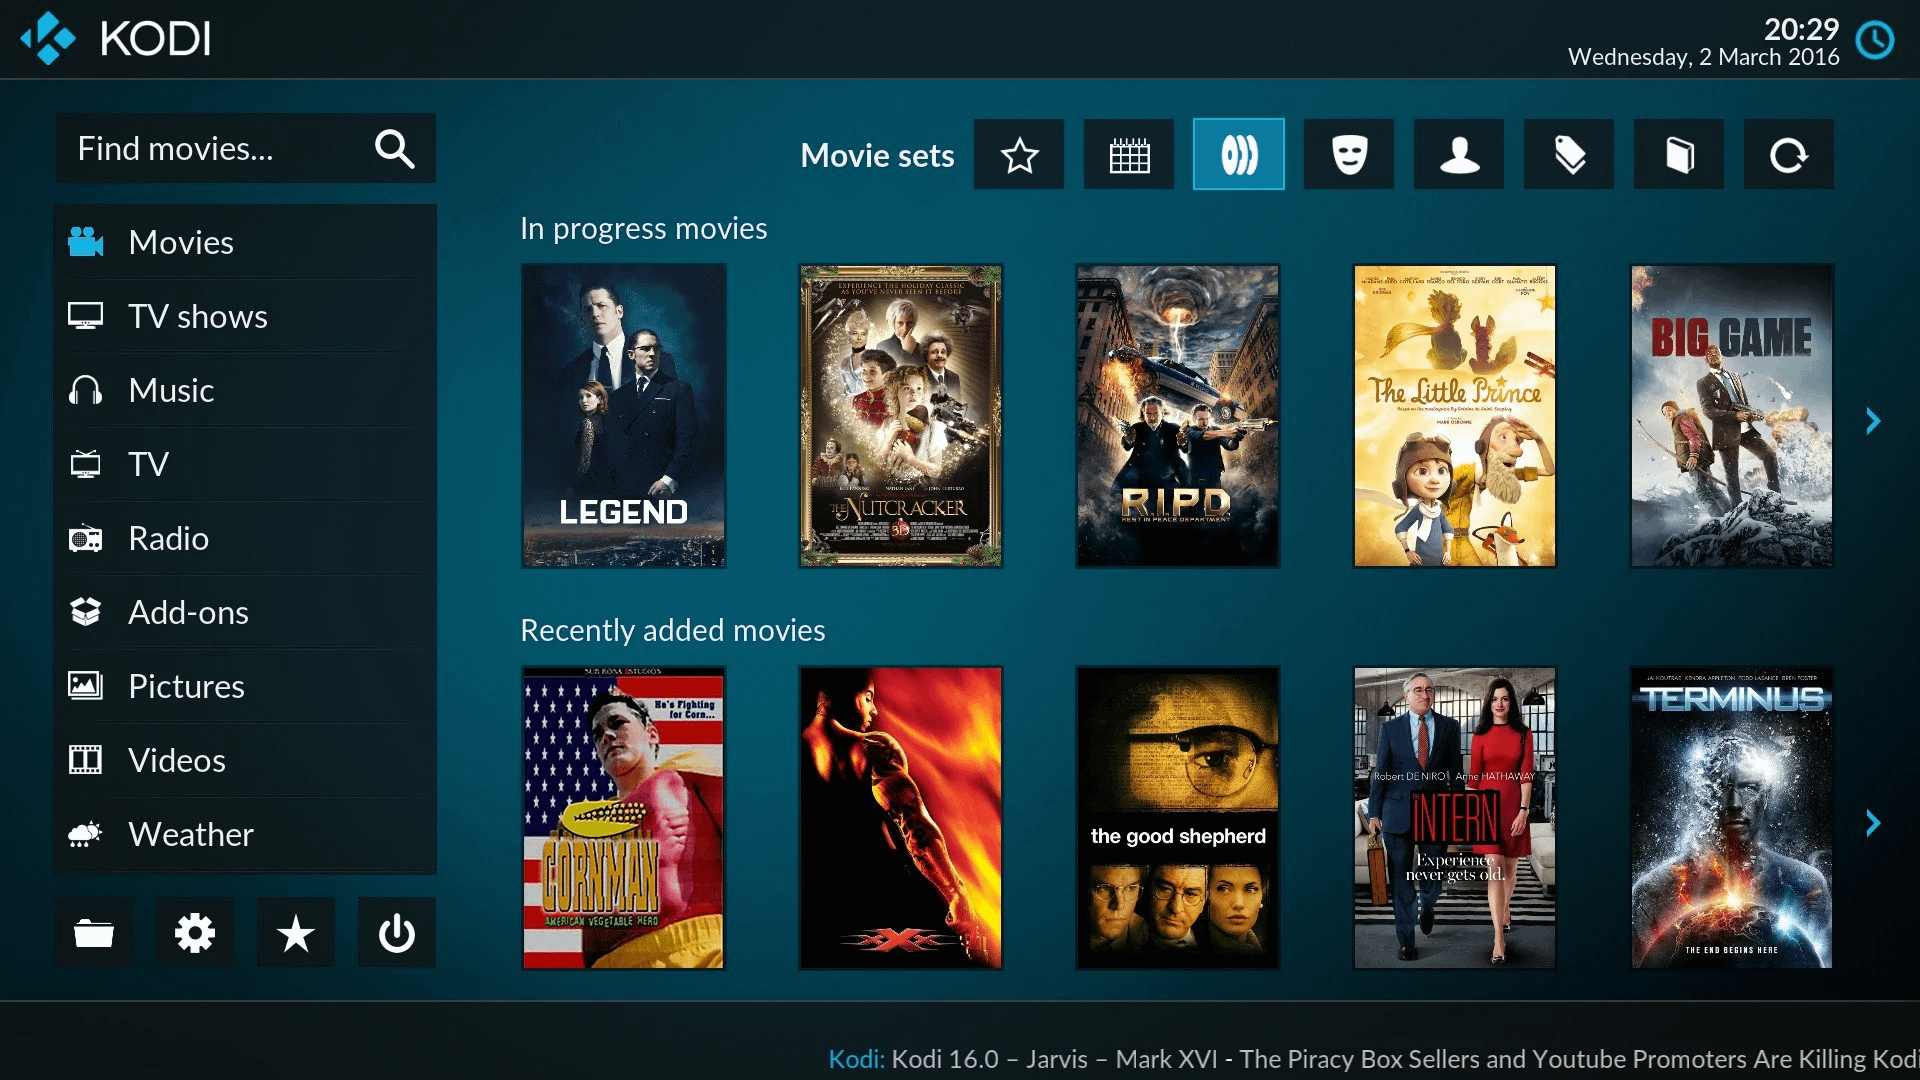 Kodi interface showing various movie titles.